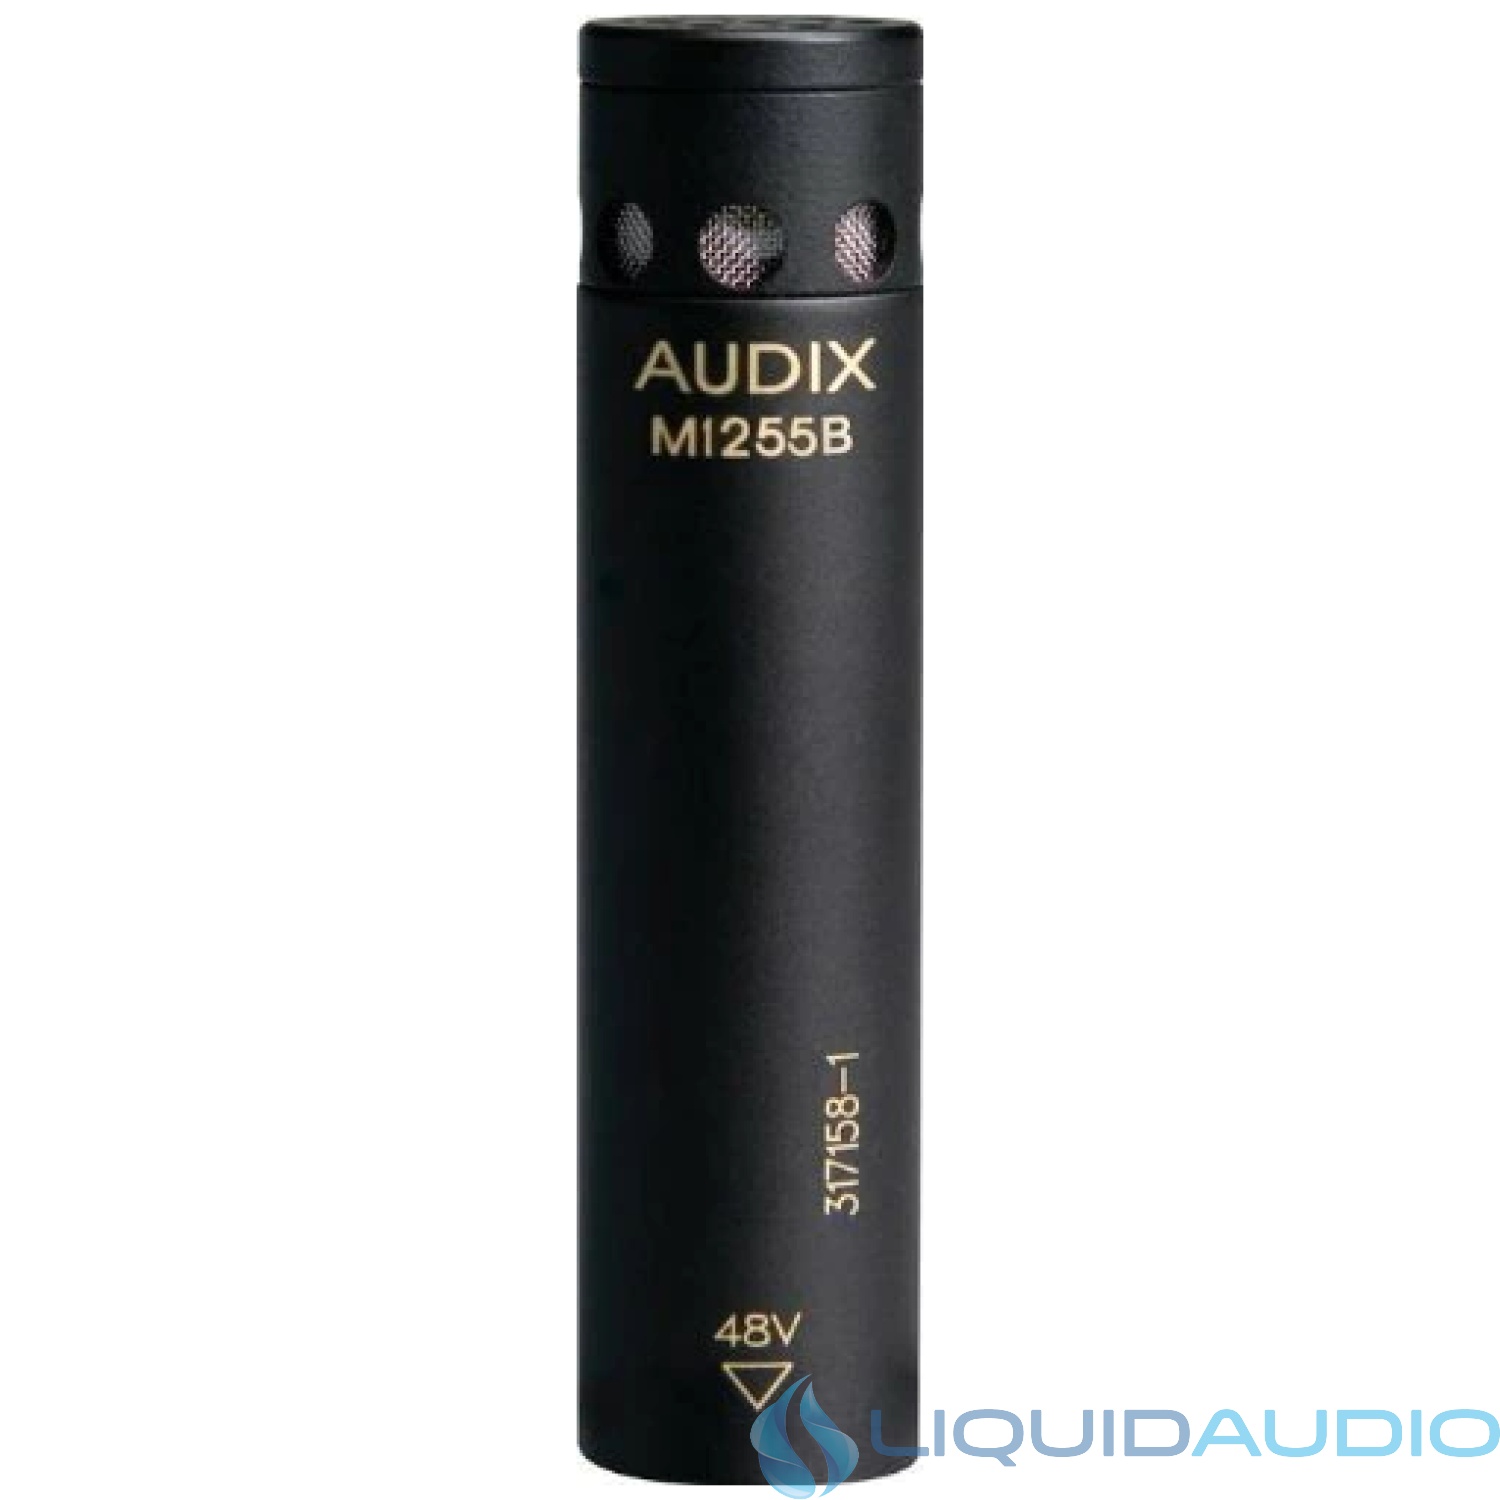 Audix M1255B-O Miniaturized Condenser Microphone Omni Standard